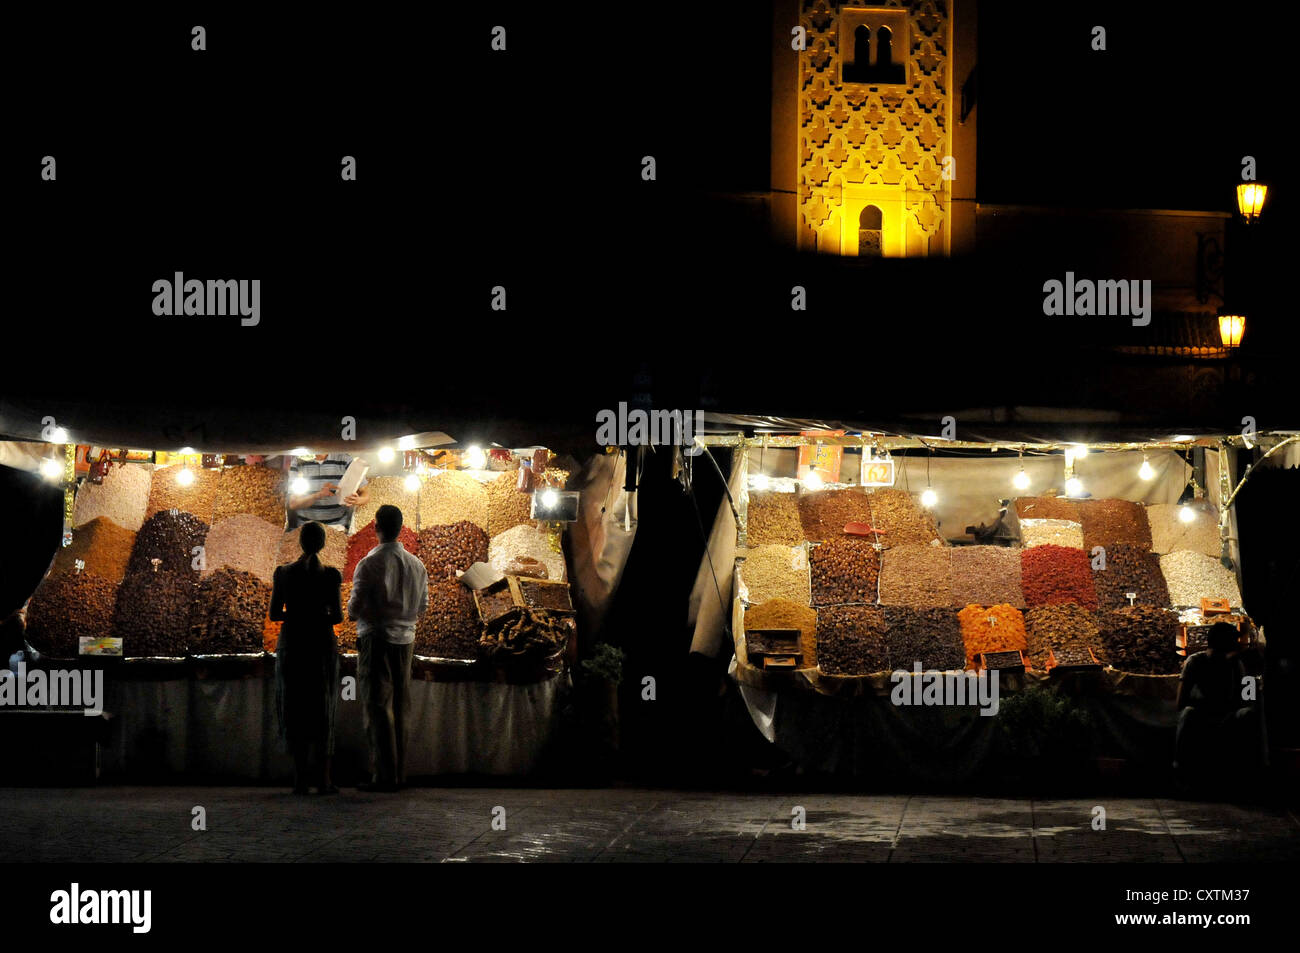 Les étals vendant des fruits, noix et d'épices dans la place Djemma el Fna dans la médina de Marrakech, Maroc, Afrique Banque D'Images